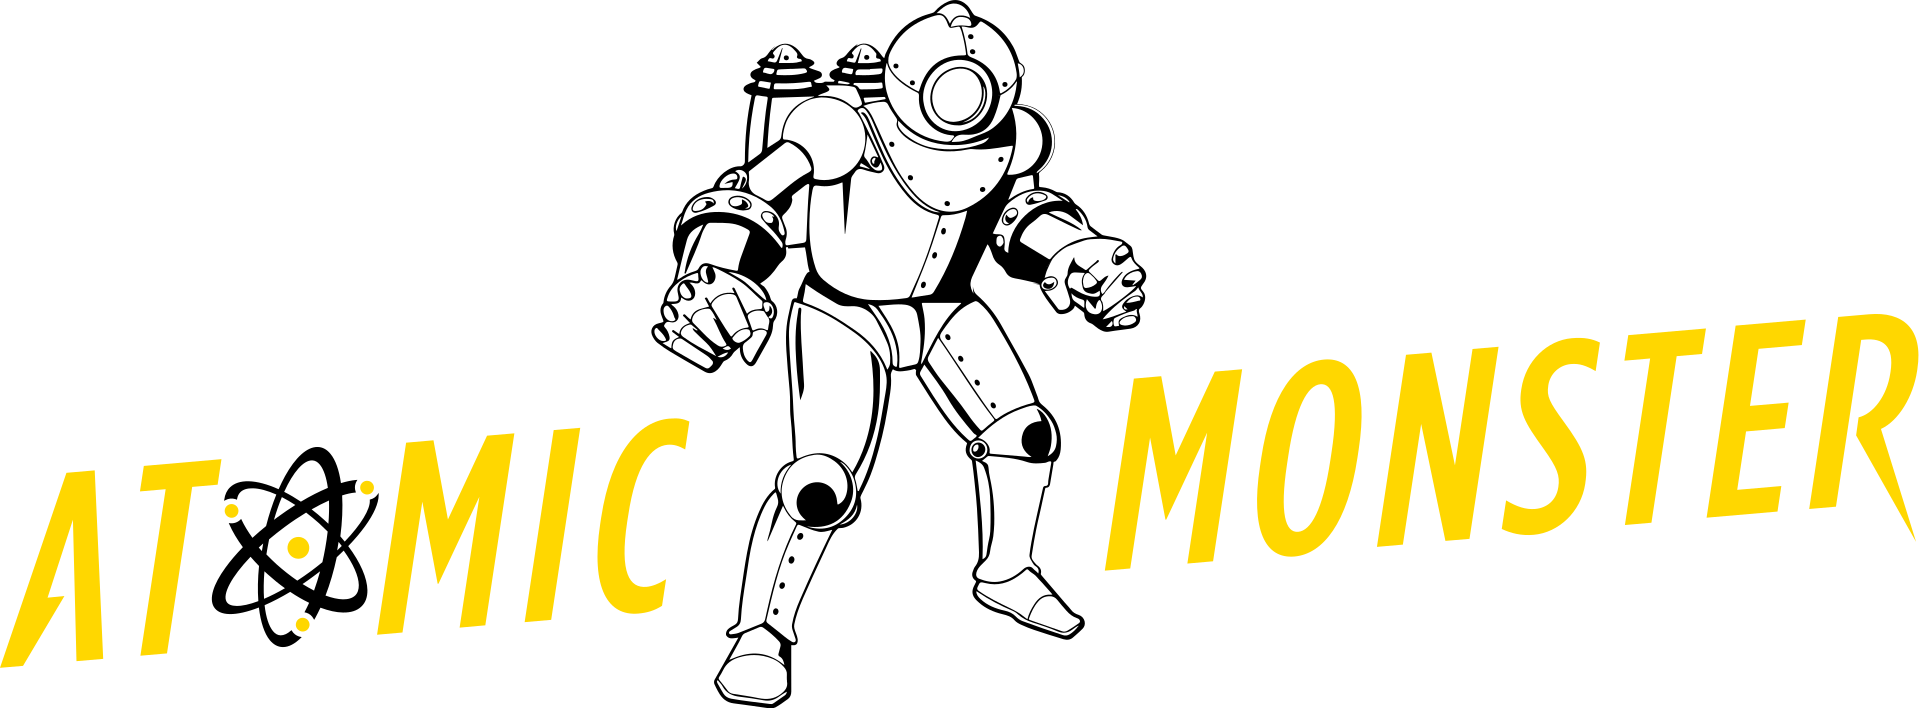 Blumhouse e Atomic Monster: ufficiale l’accordo di fusione